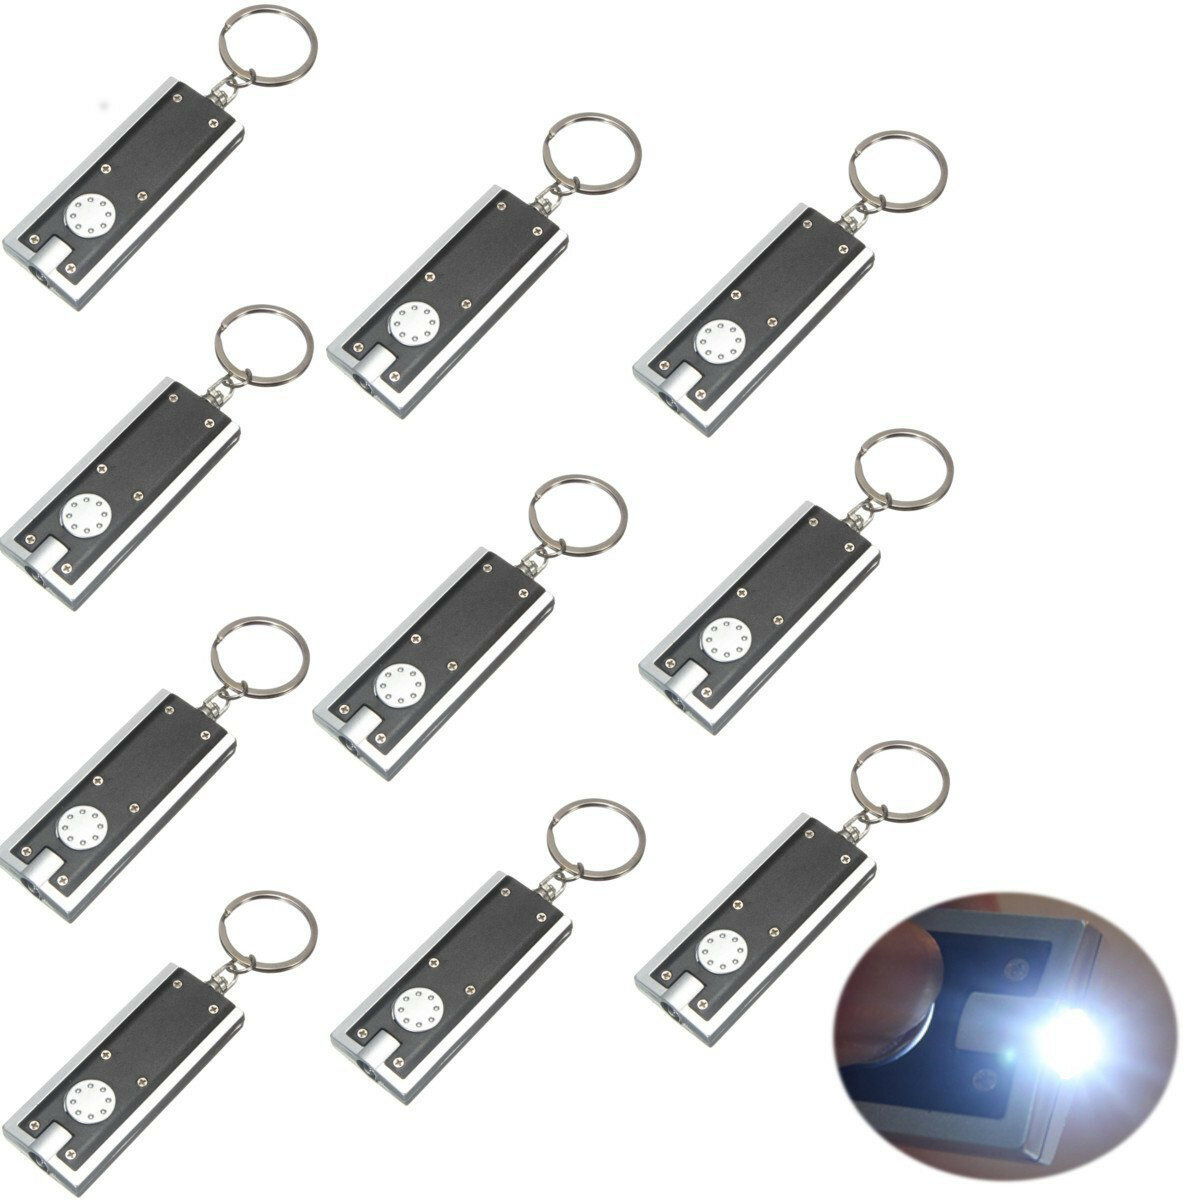 

MECO 10 pcs Mini Flashlight LED Camping Keyring Flashlight Keychain Flashlight